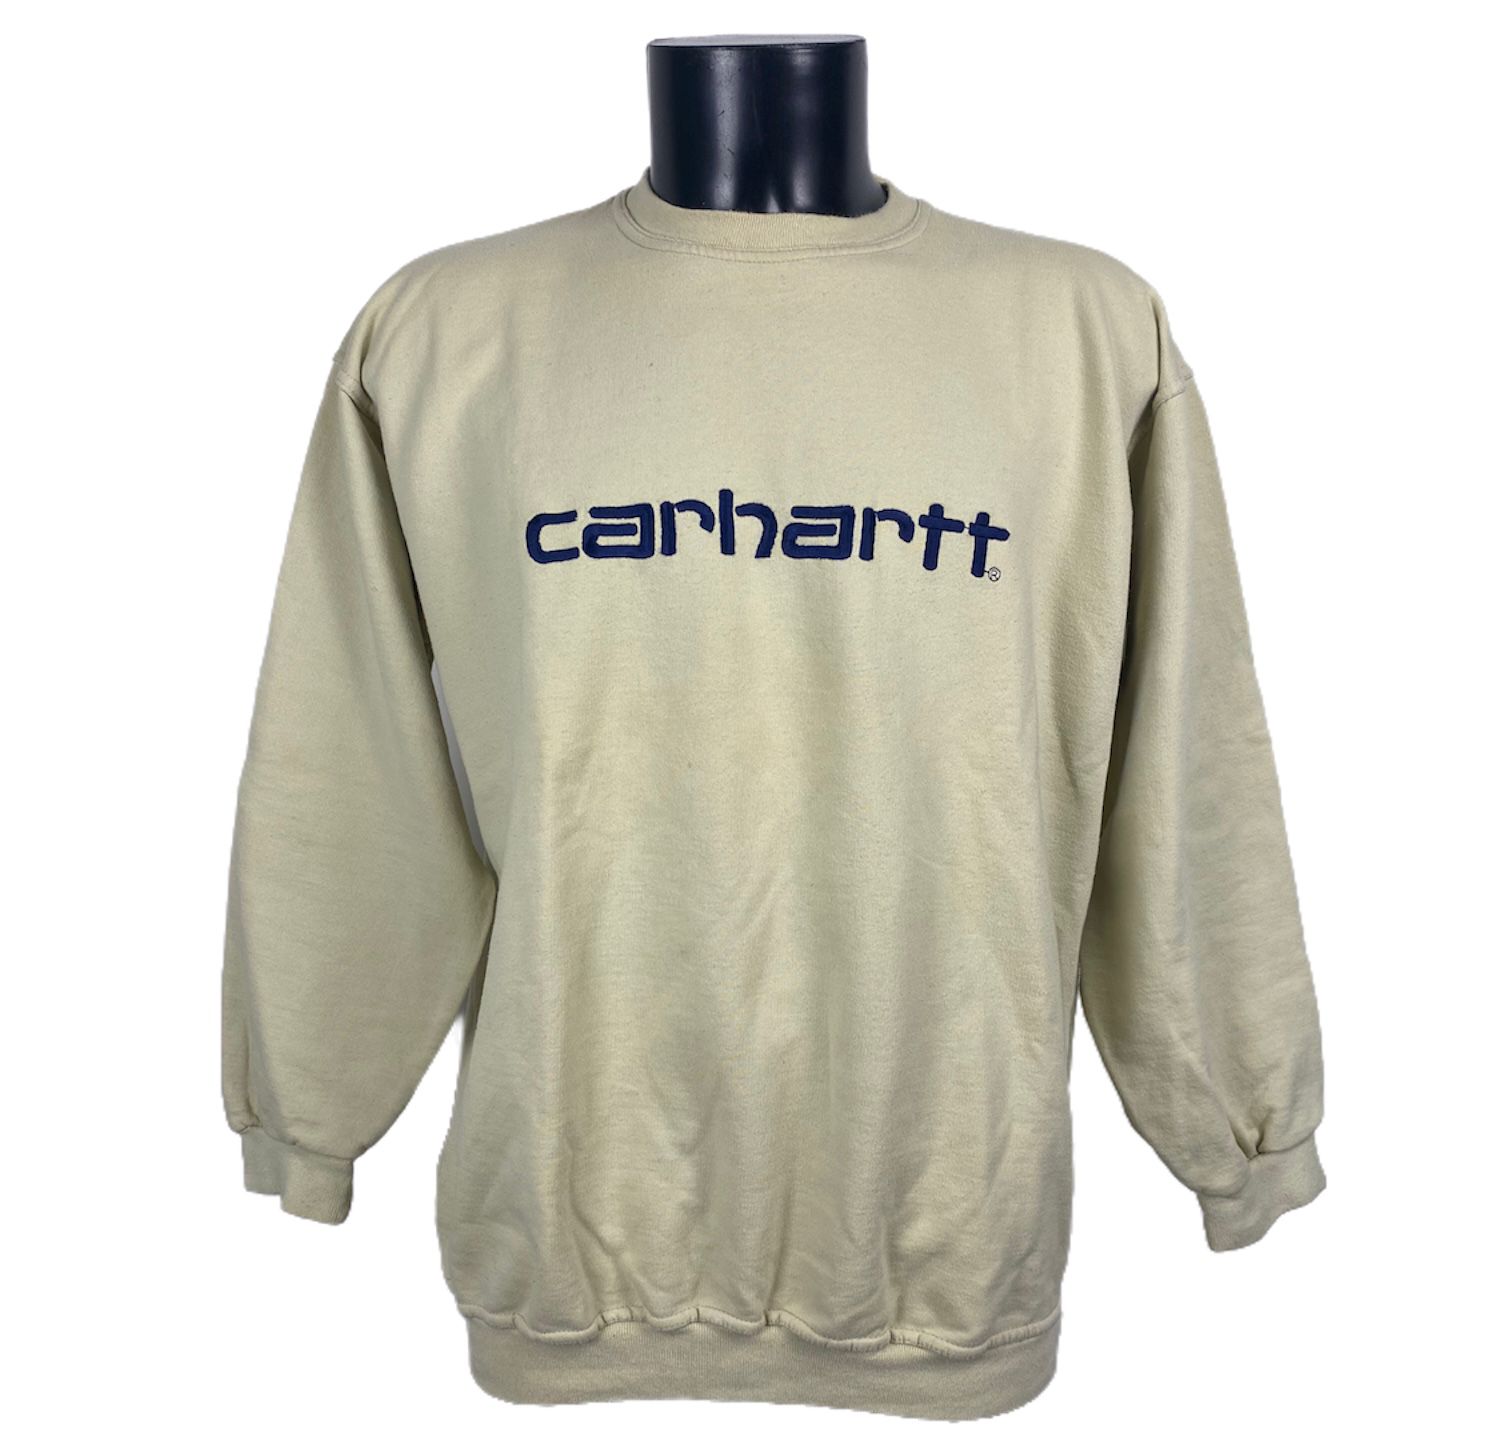 Felpa Carhartt vintage senza cappuccio color panna con scritta Felpa Carhartt blu